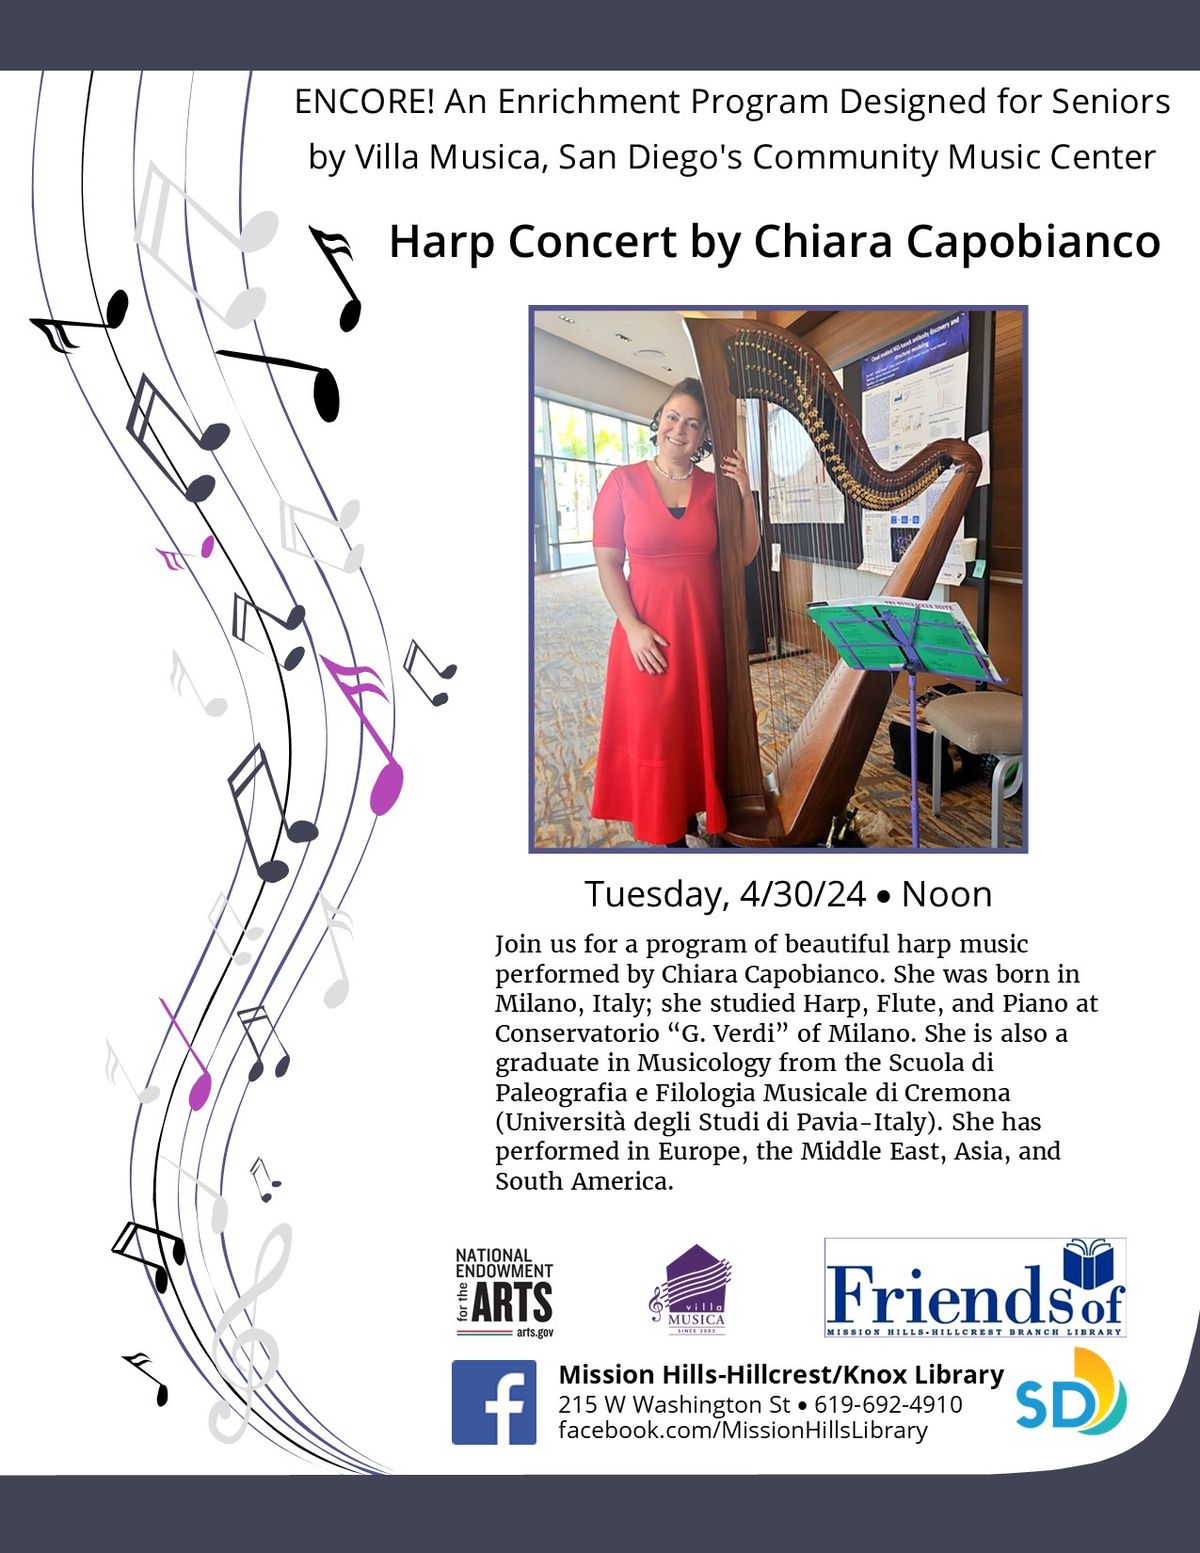 Harp Concert by Chiara Capobianco